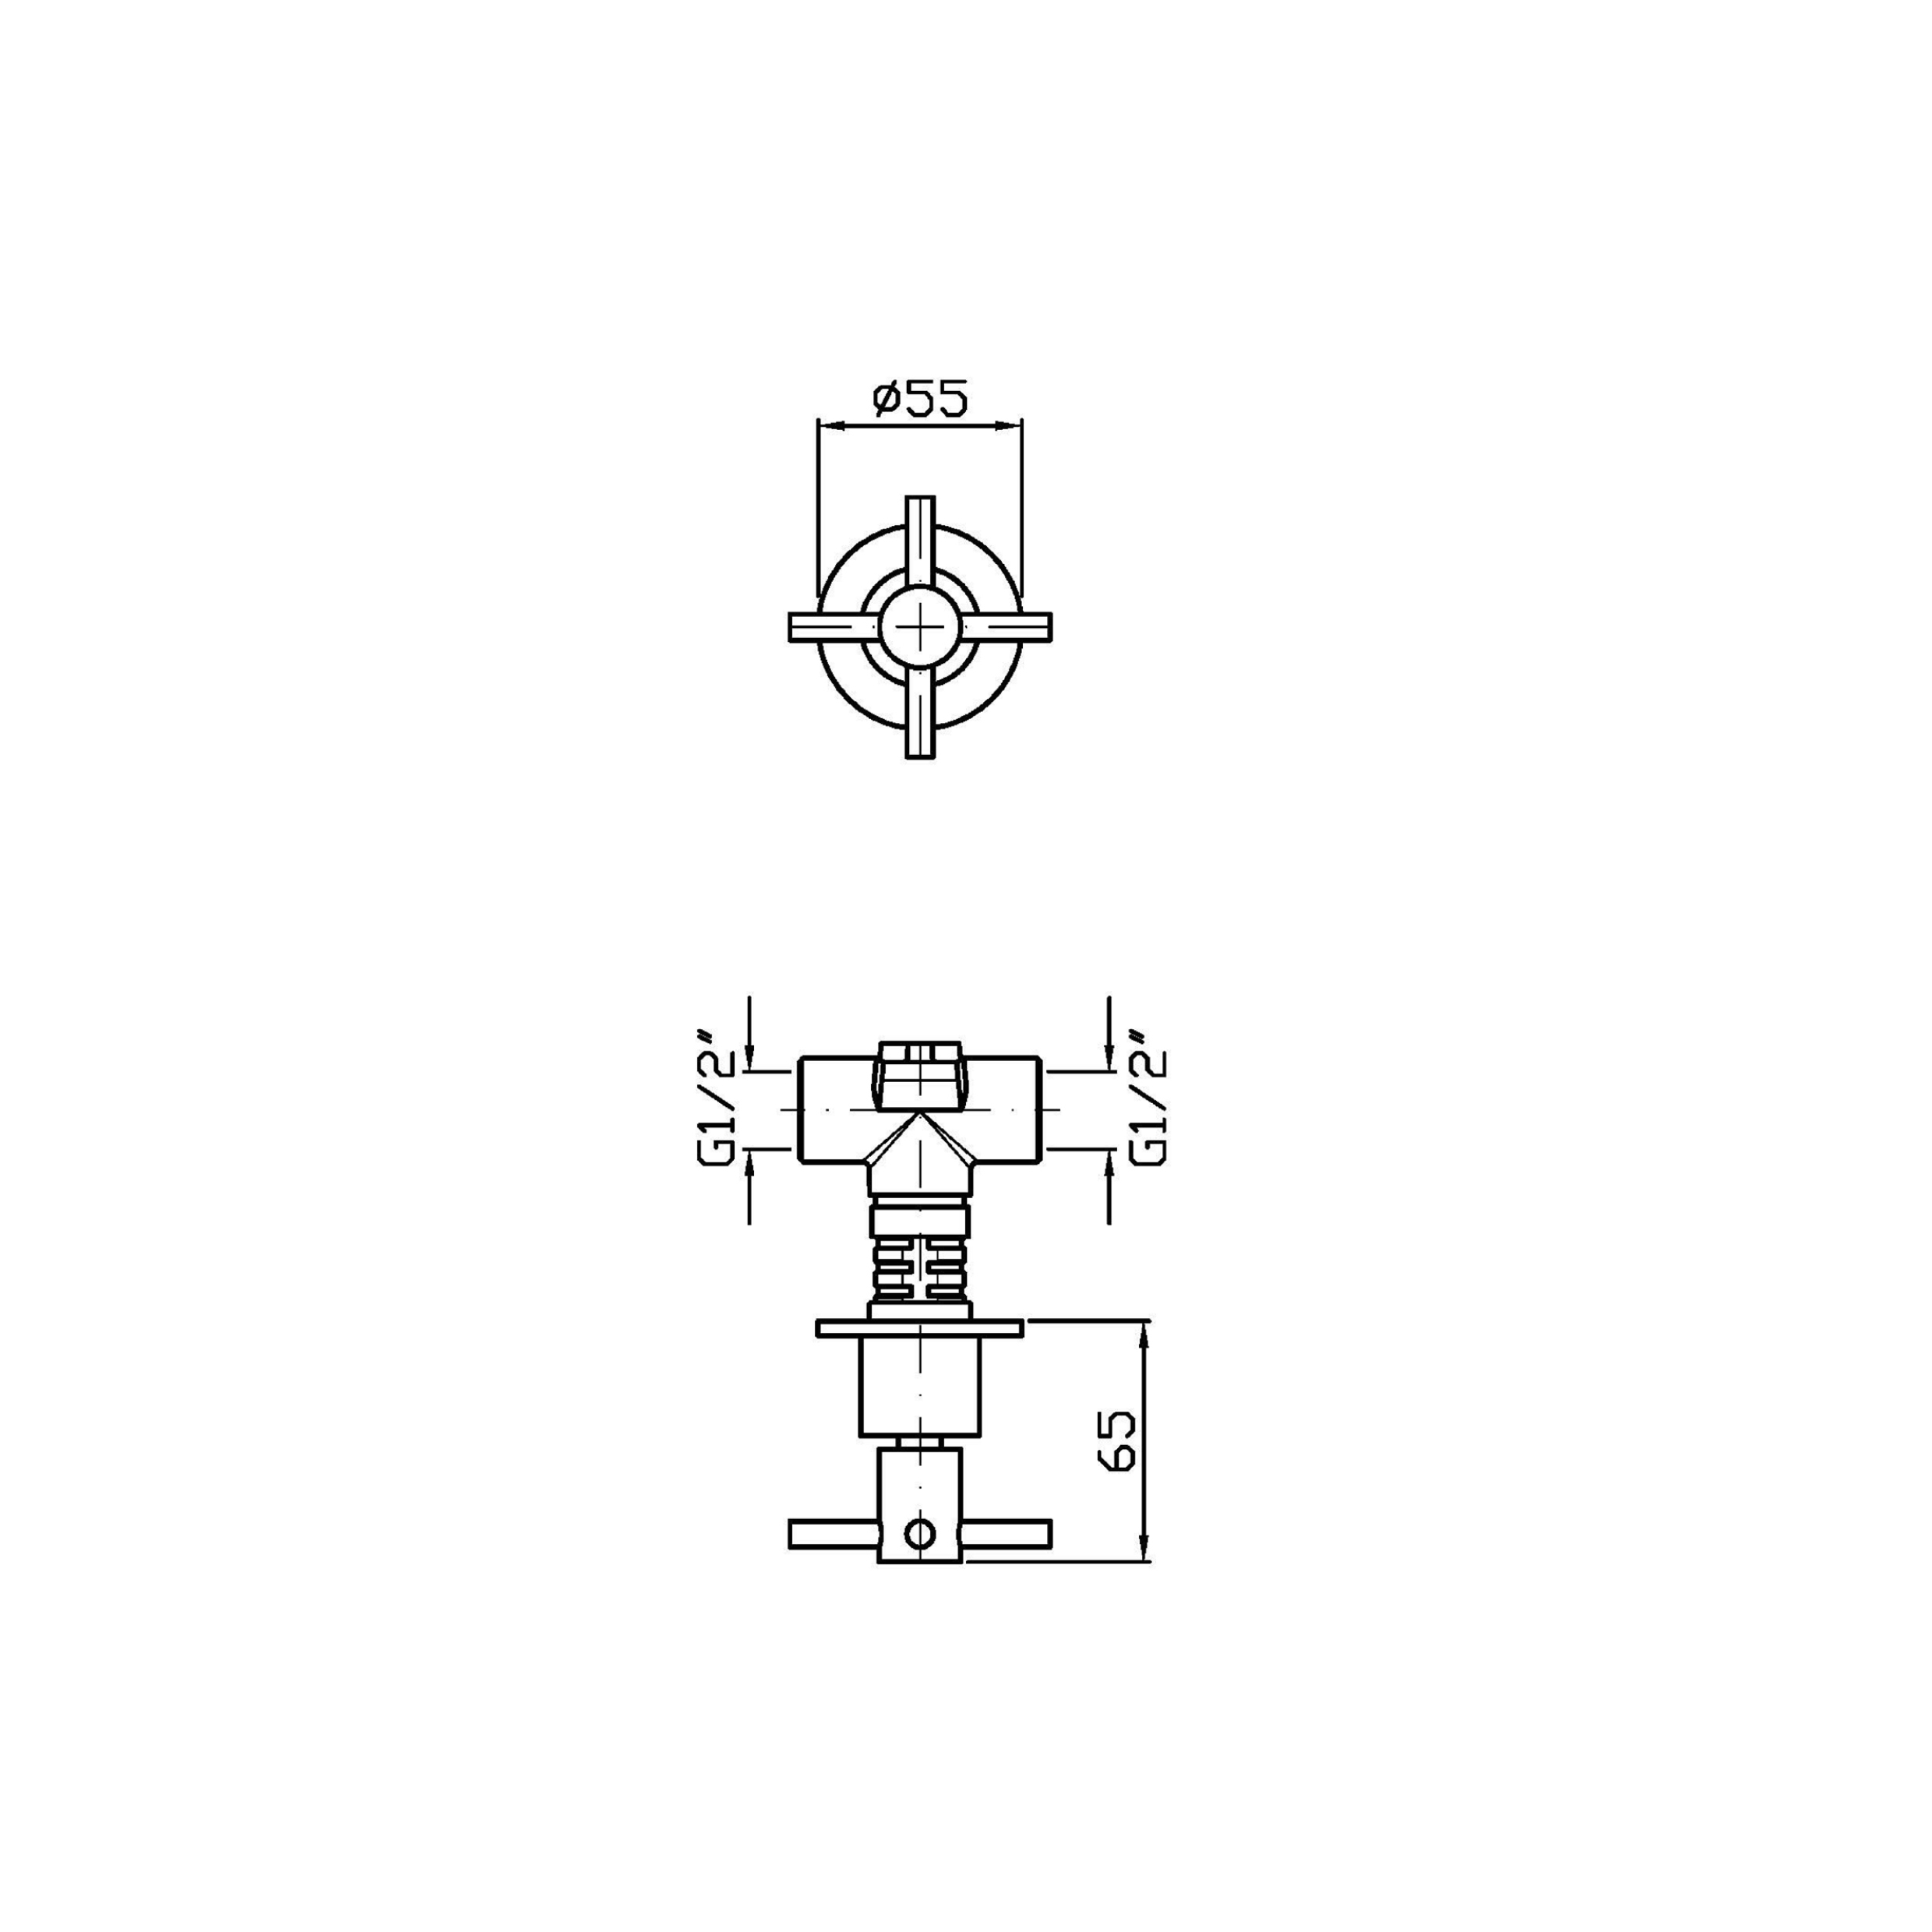 hochwertiges-zucchetti-unterputz-ventil-aus-edelstahl-als-kreuzgriff-zucchetti-helm-akzhm729-x-r99779-technische-zeichnung